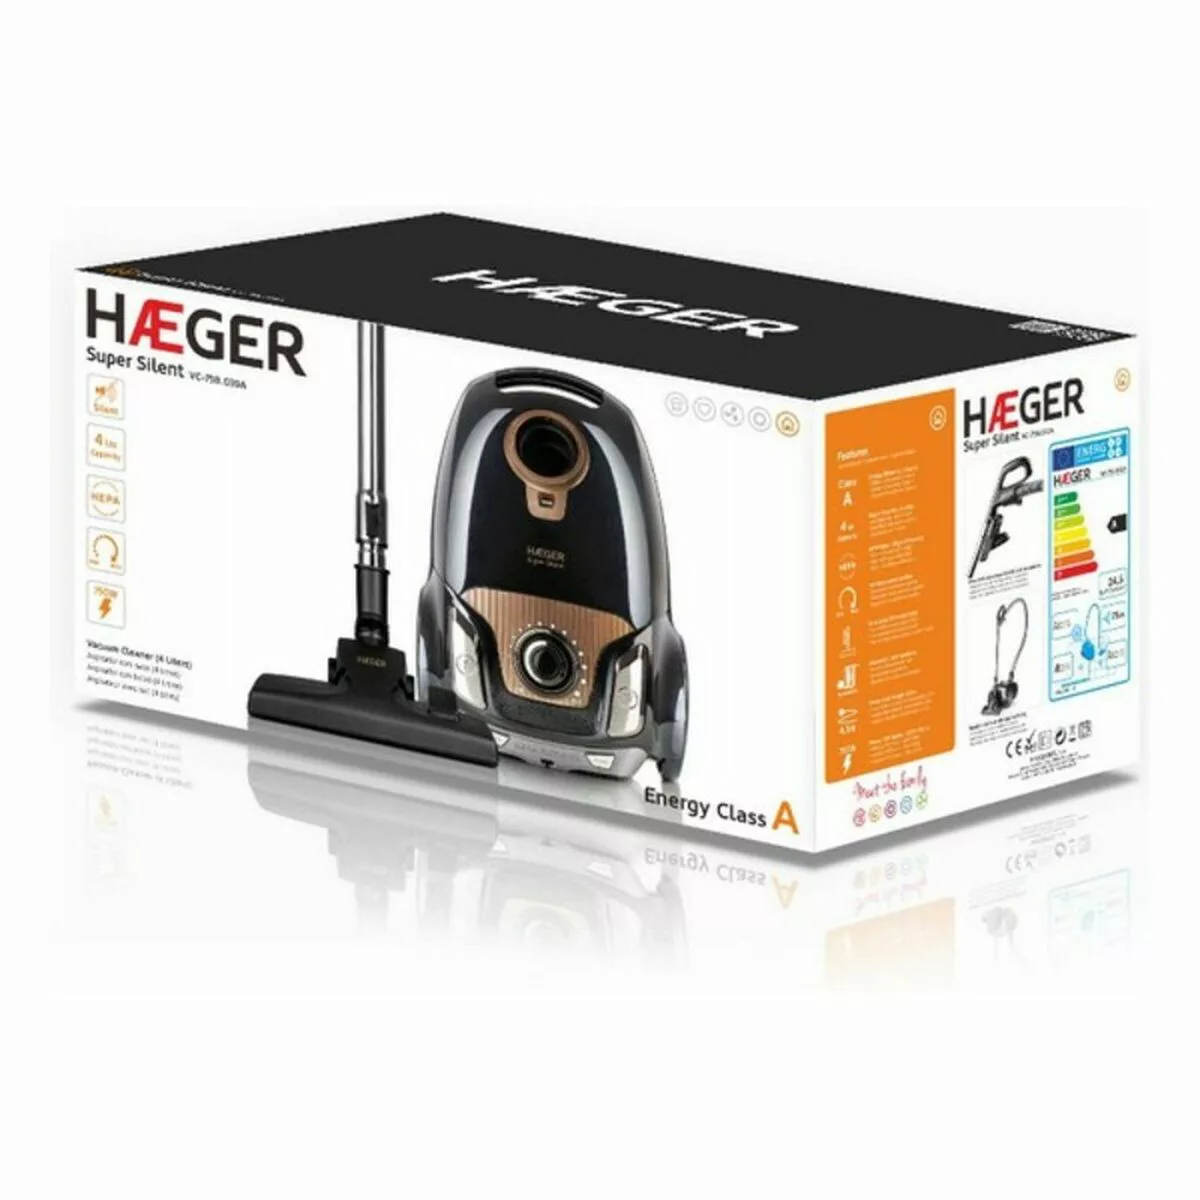 Staubsauger Haeger Super Silent 750w günstig online kaufen